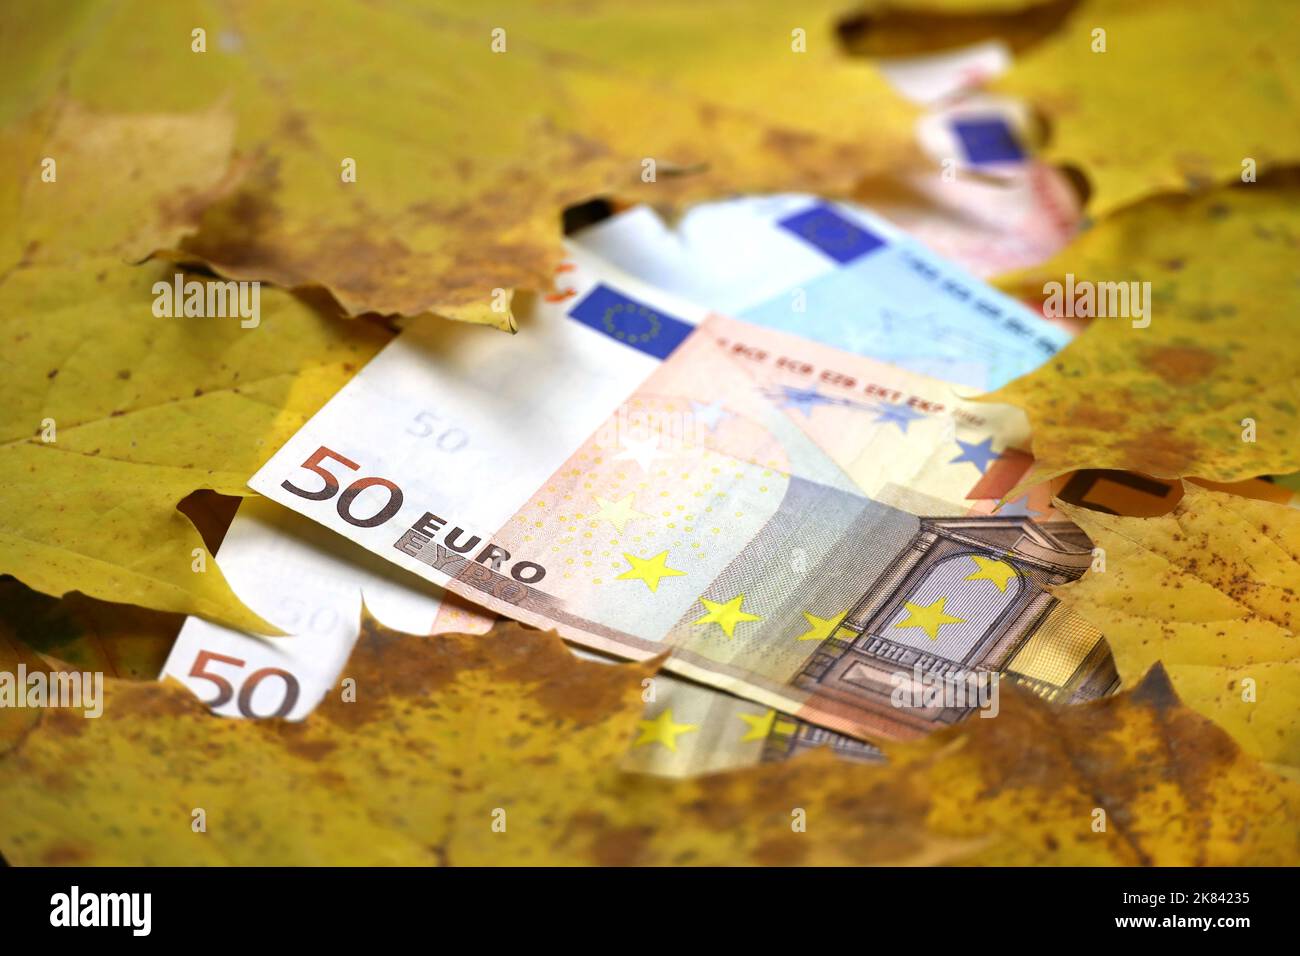 Billets en euros recouverts de feuilles d'érable orange. Économie de l'Europe à l'automne, taux de change Banque D'Images